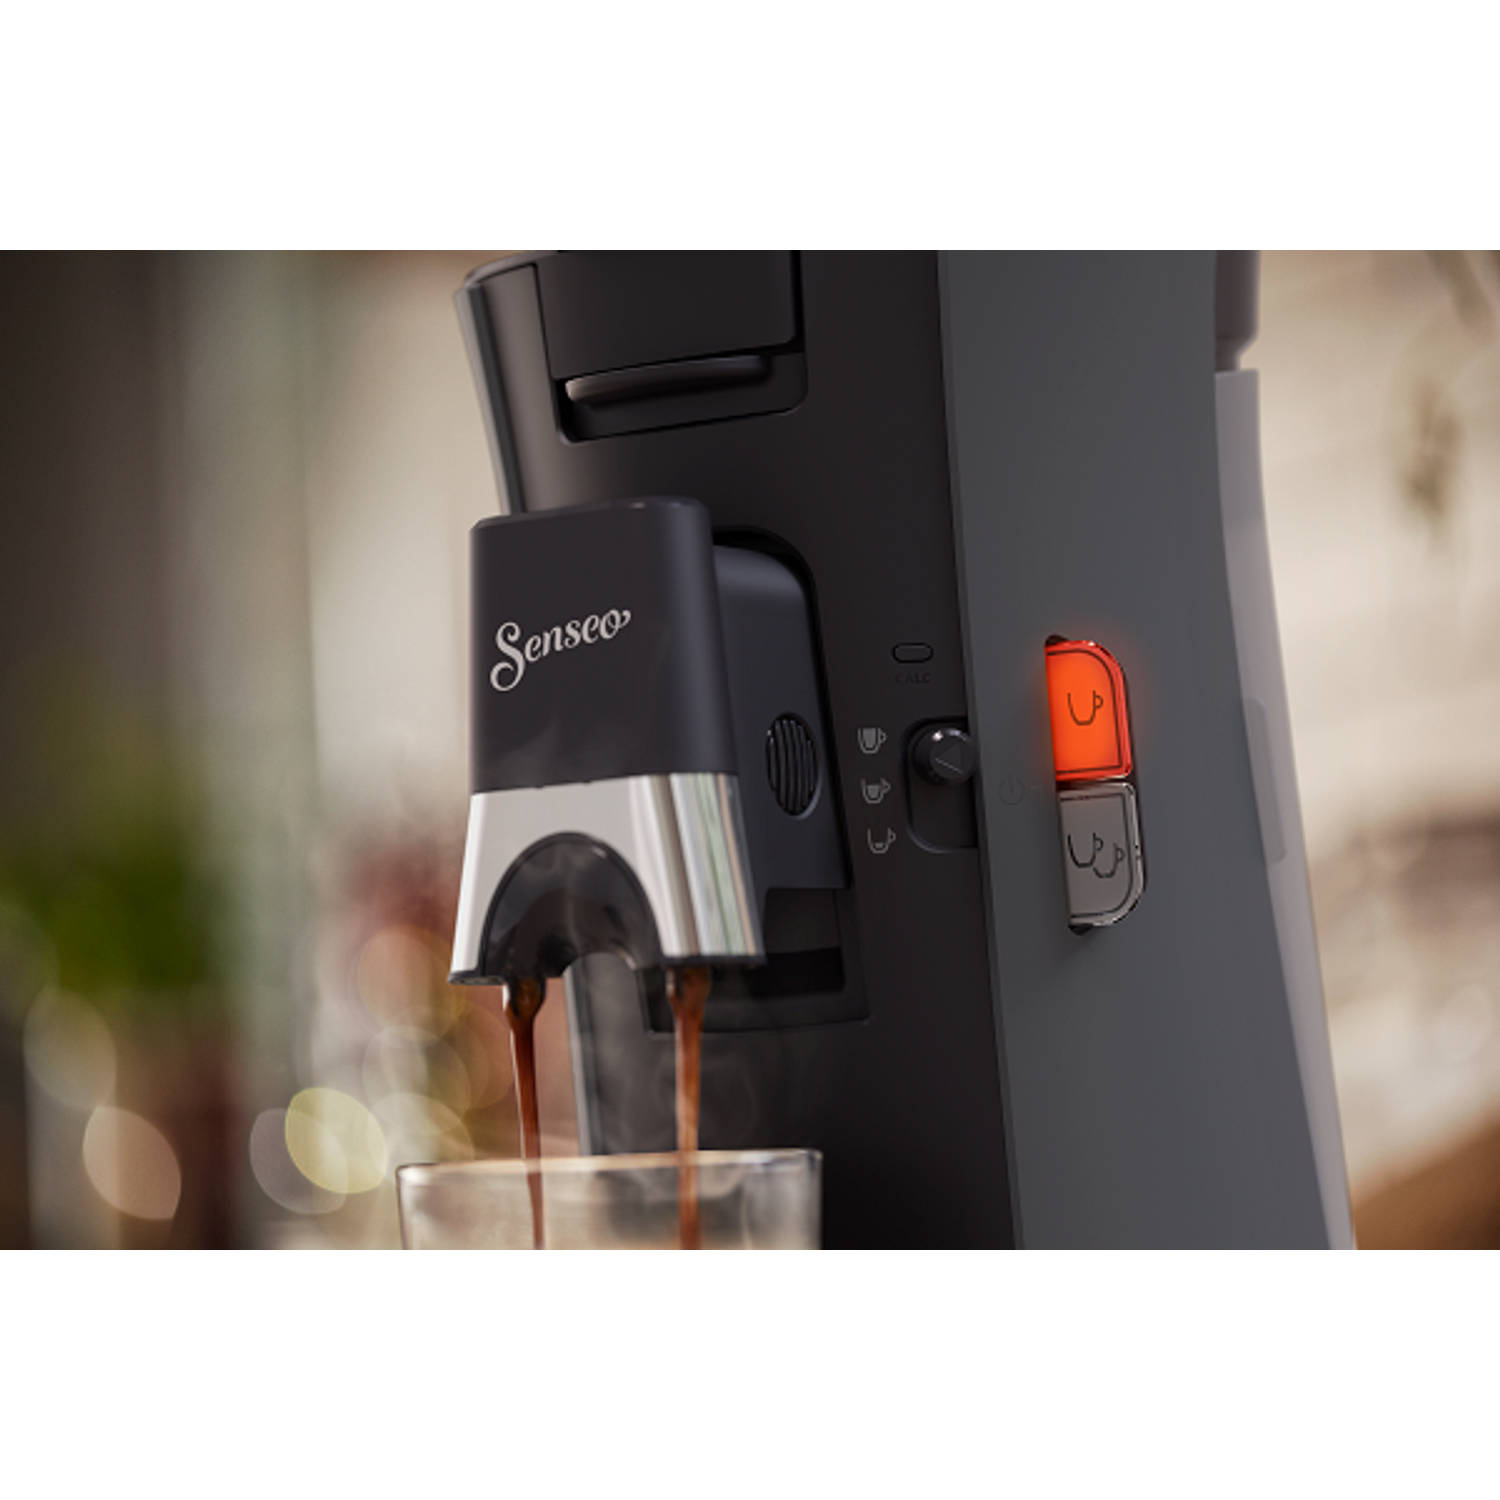 vertrekken Tenslotte lepel Philips SENSEO® Select koffiepadmachine CSA230/50 donkergrijs | Blokker